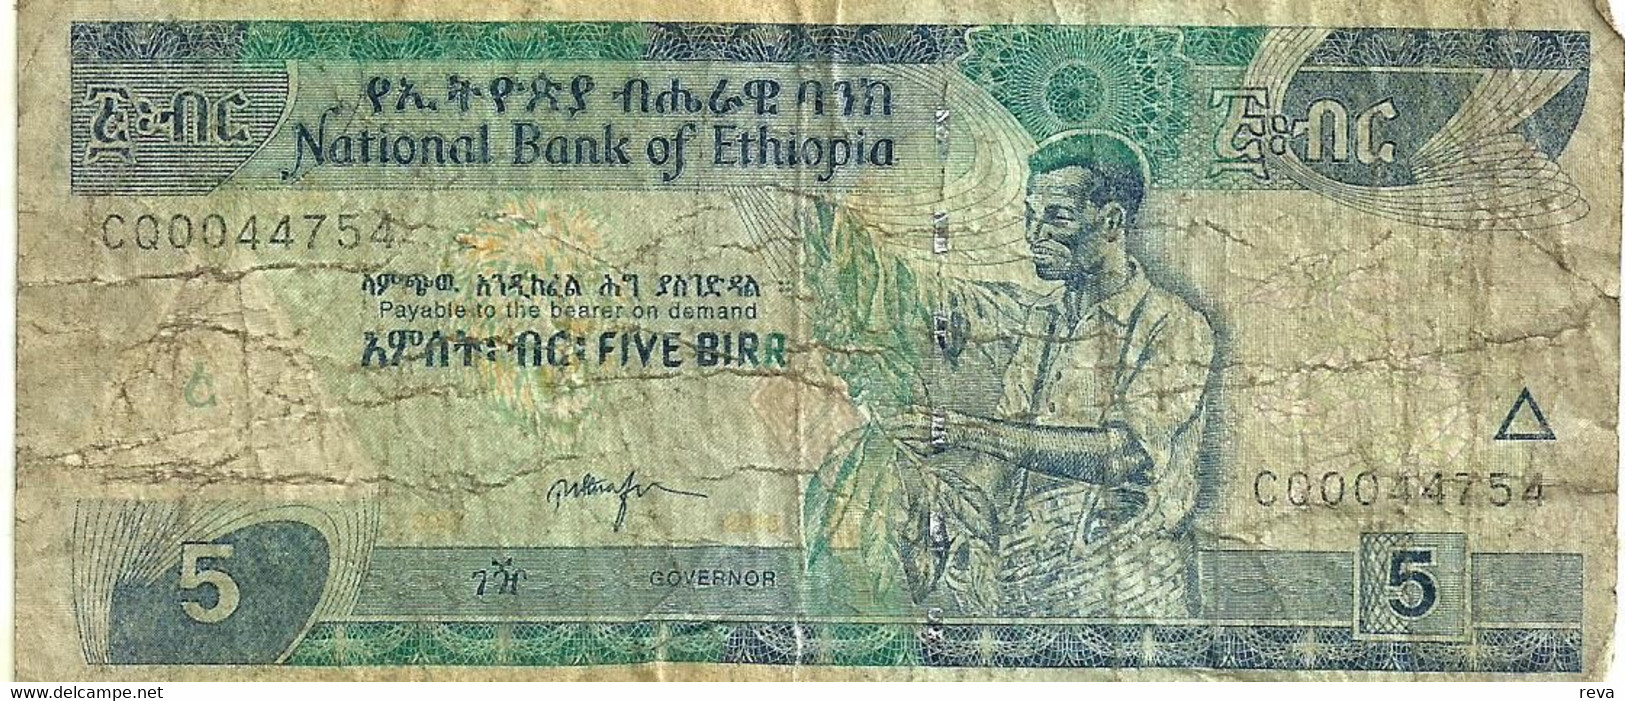 ETHIOPIA 5 BIRR BLUE  MAN FRONT & LANDSCAPE BACK ND(2000)P.47a SIG7. VG READ DESCRIPTION - Ethiopië